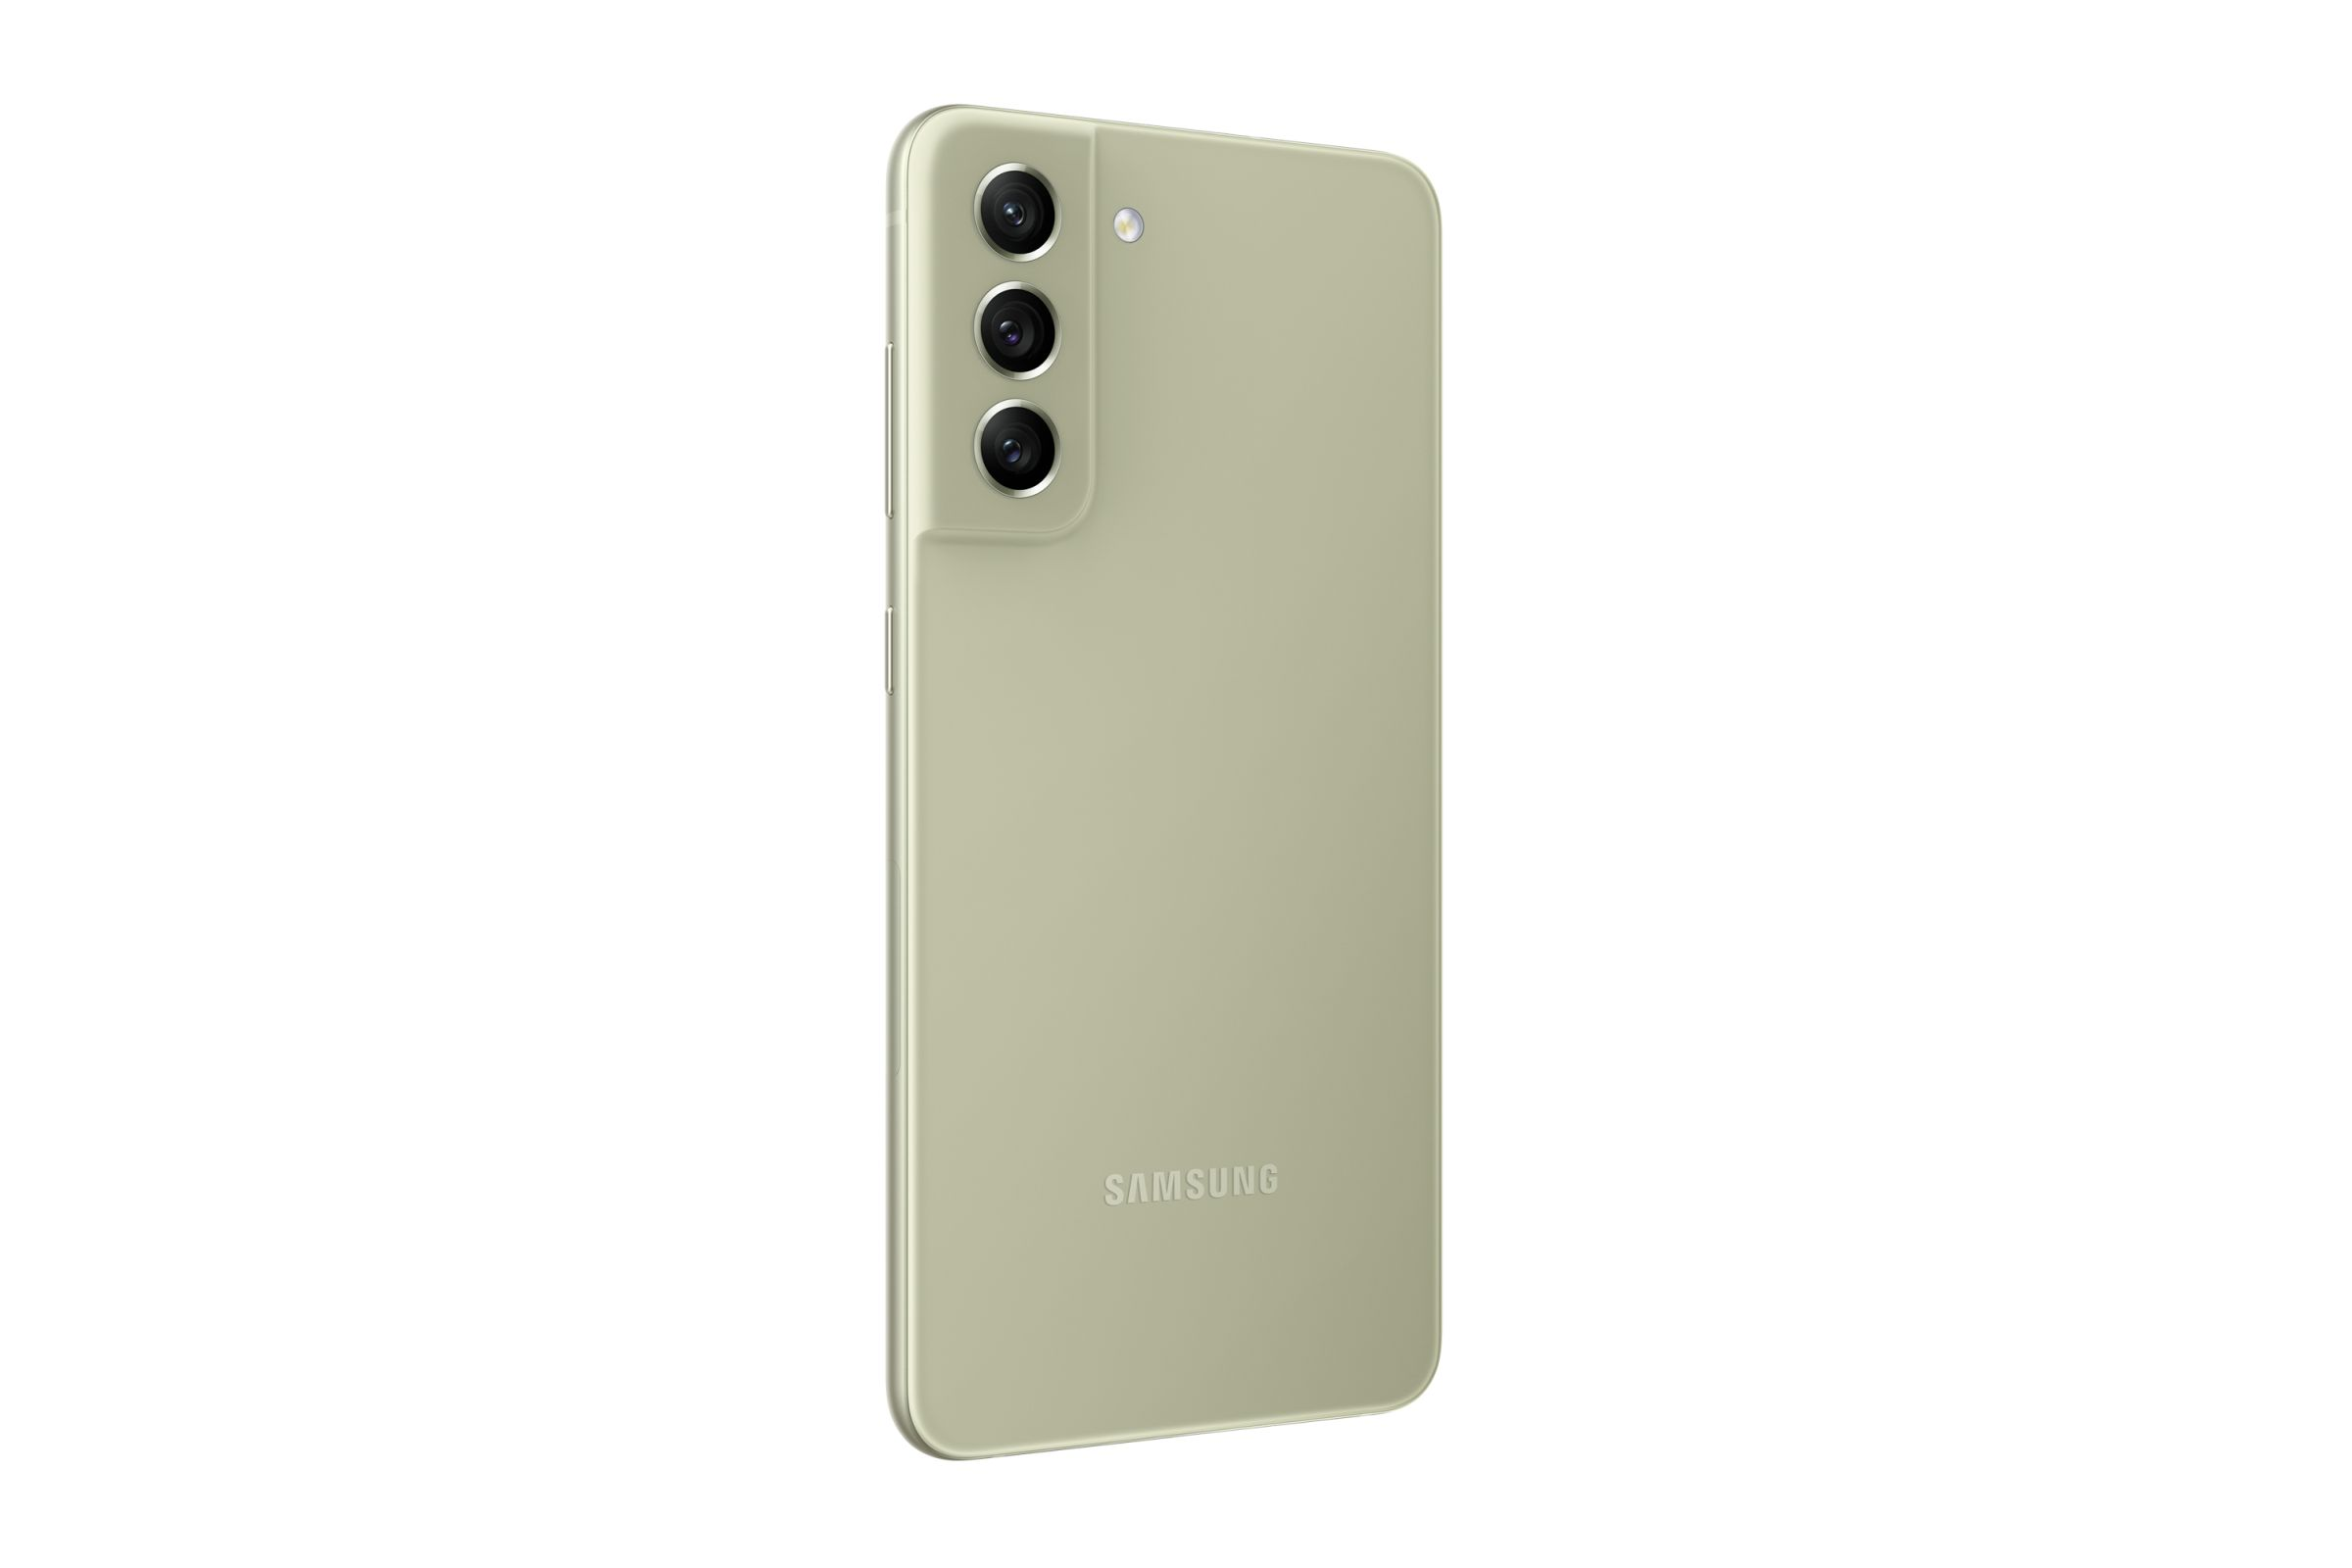 SAMSUNG Galaxy S21 FE GB 128GB 5G Green 128 Grün - Dual SIM